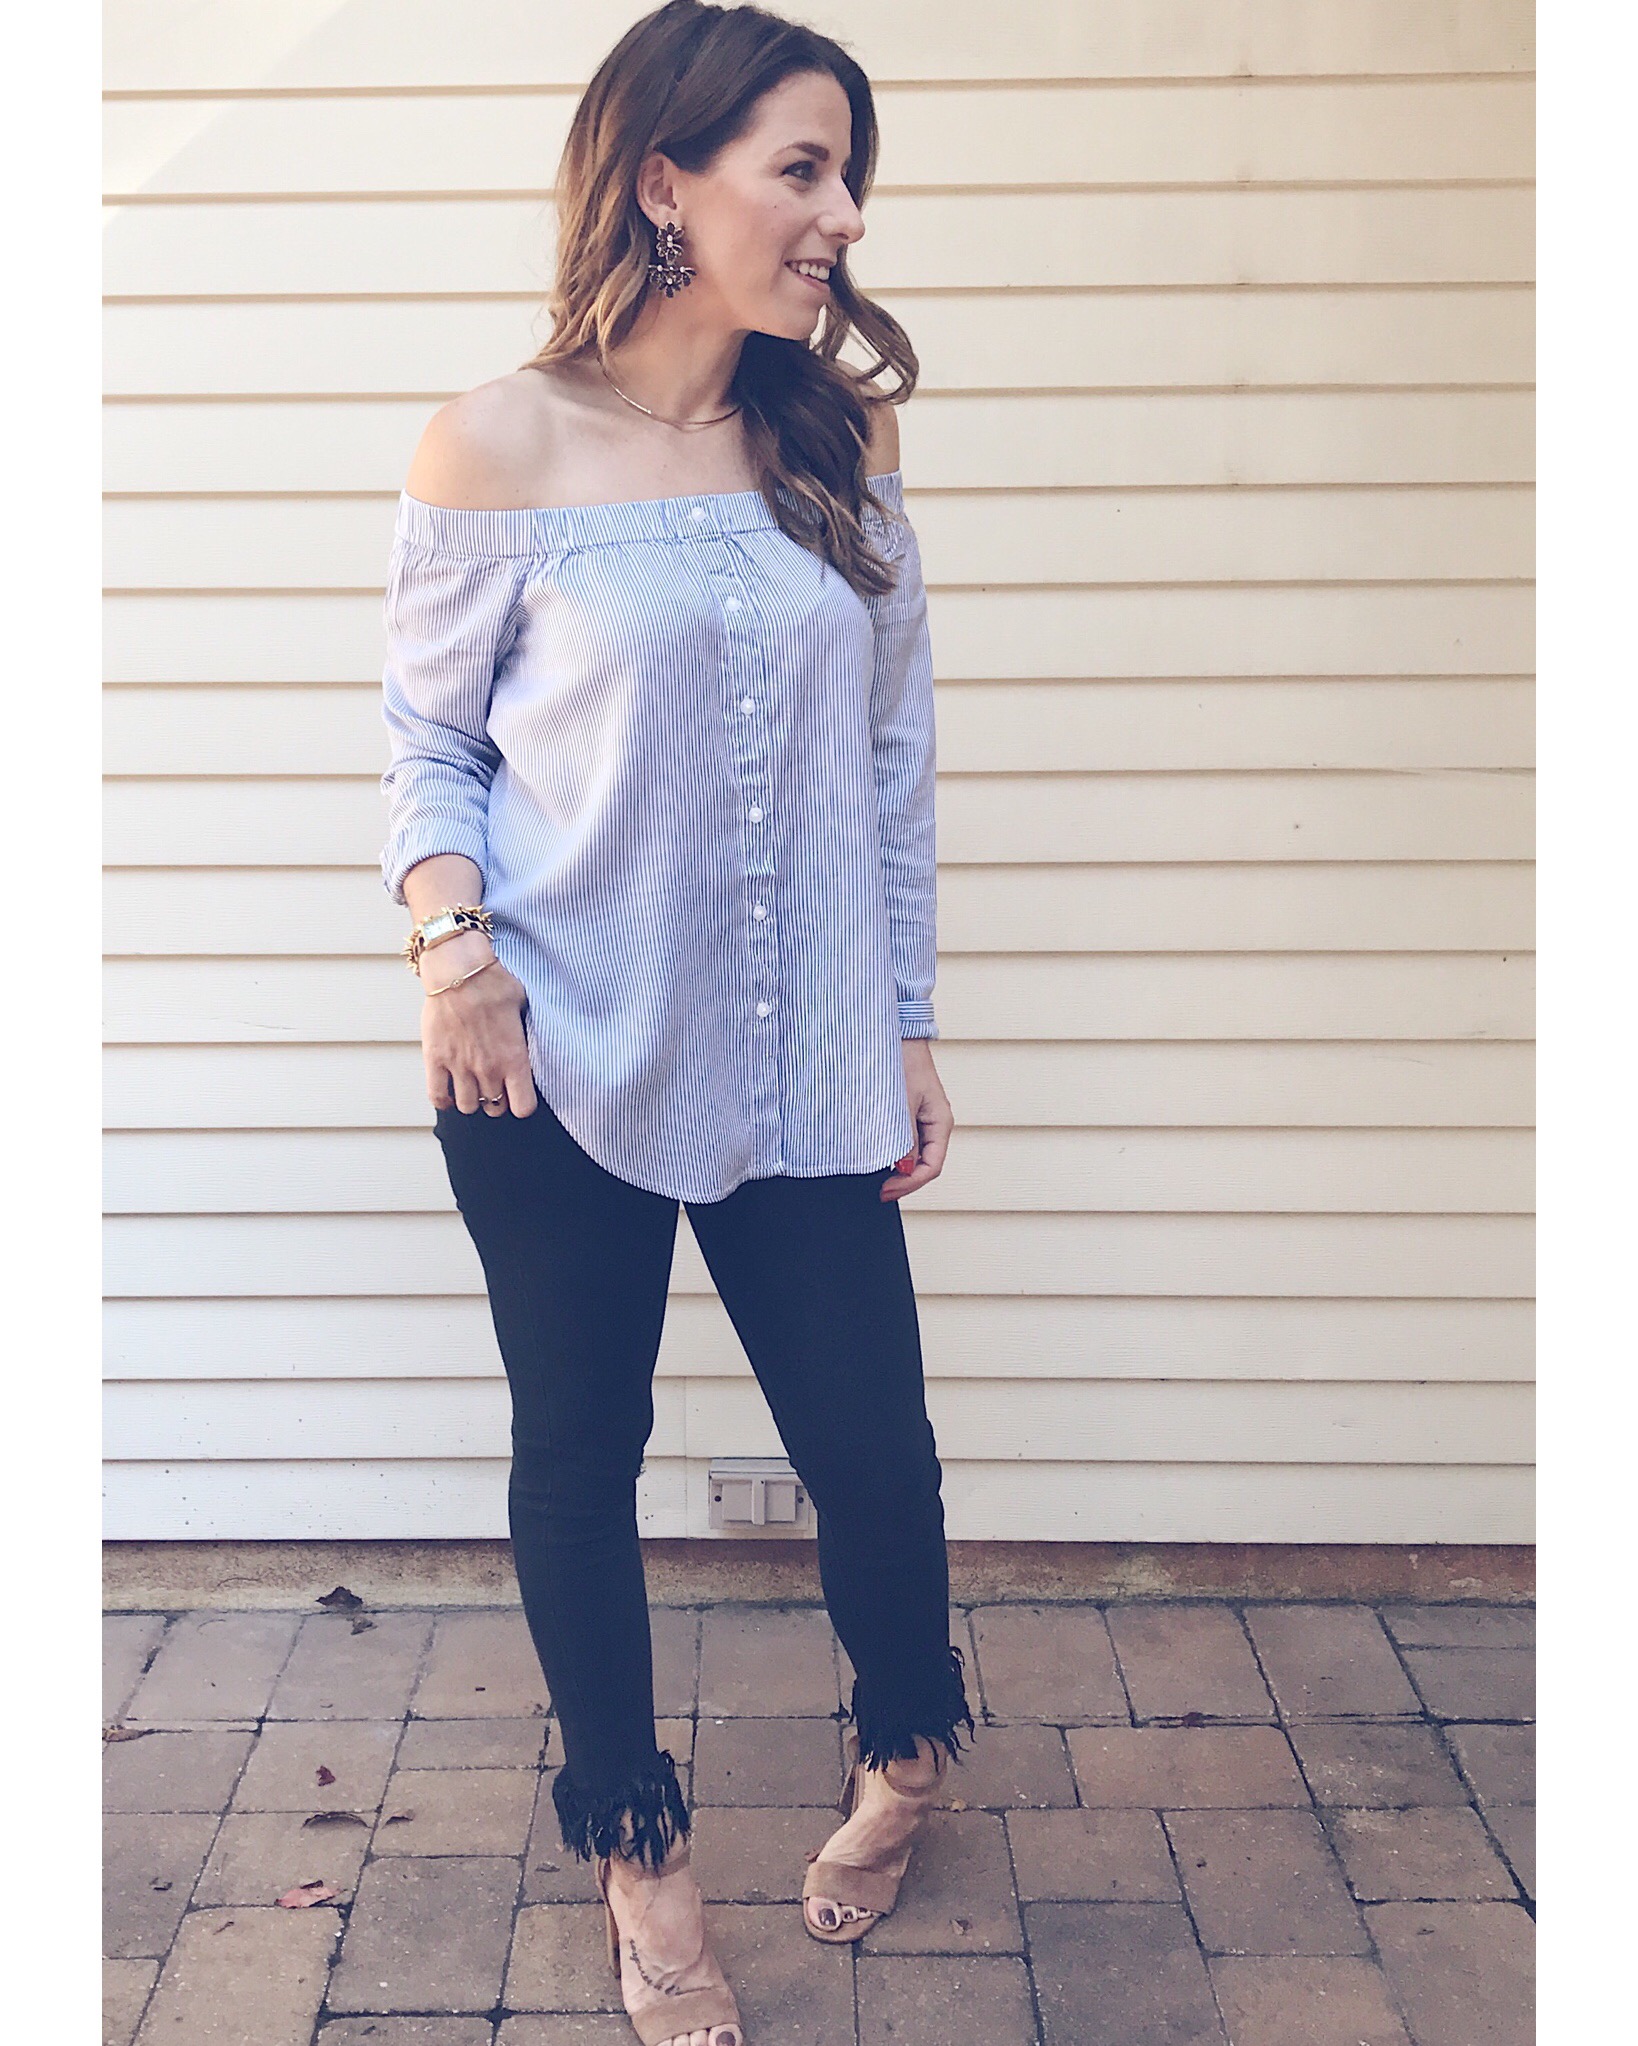 instagram roundup + this weekend’s best sales – Jillian Rosado